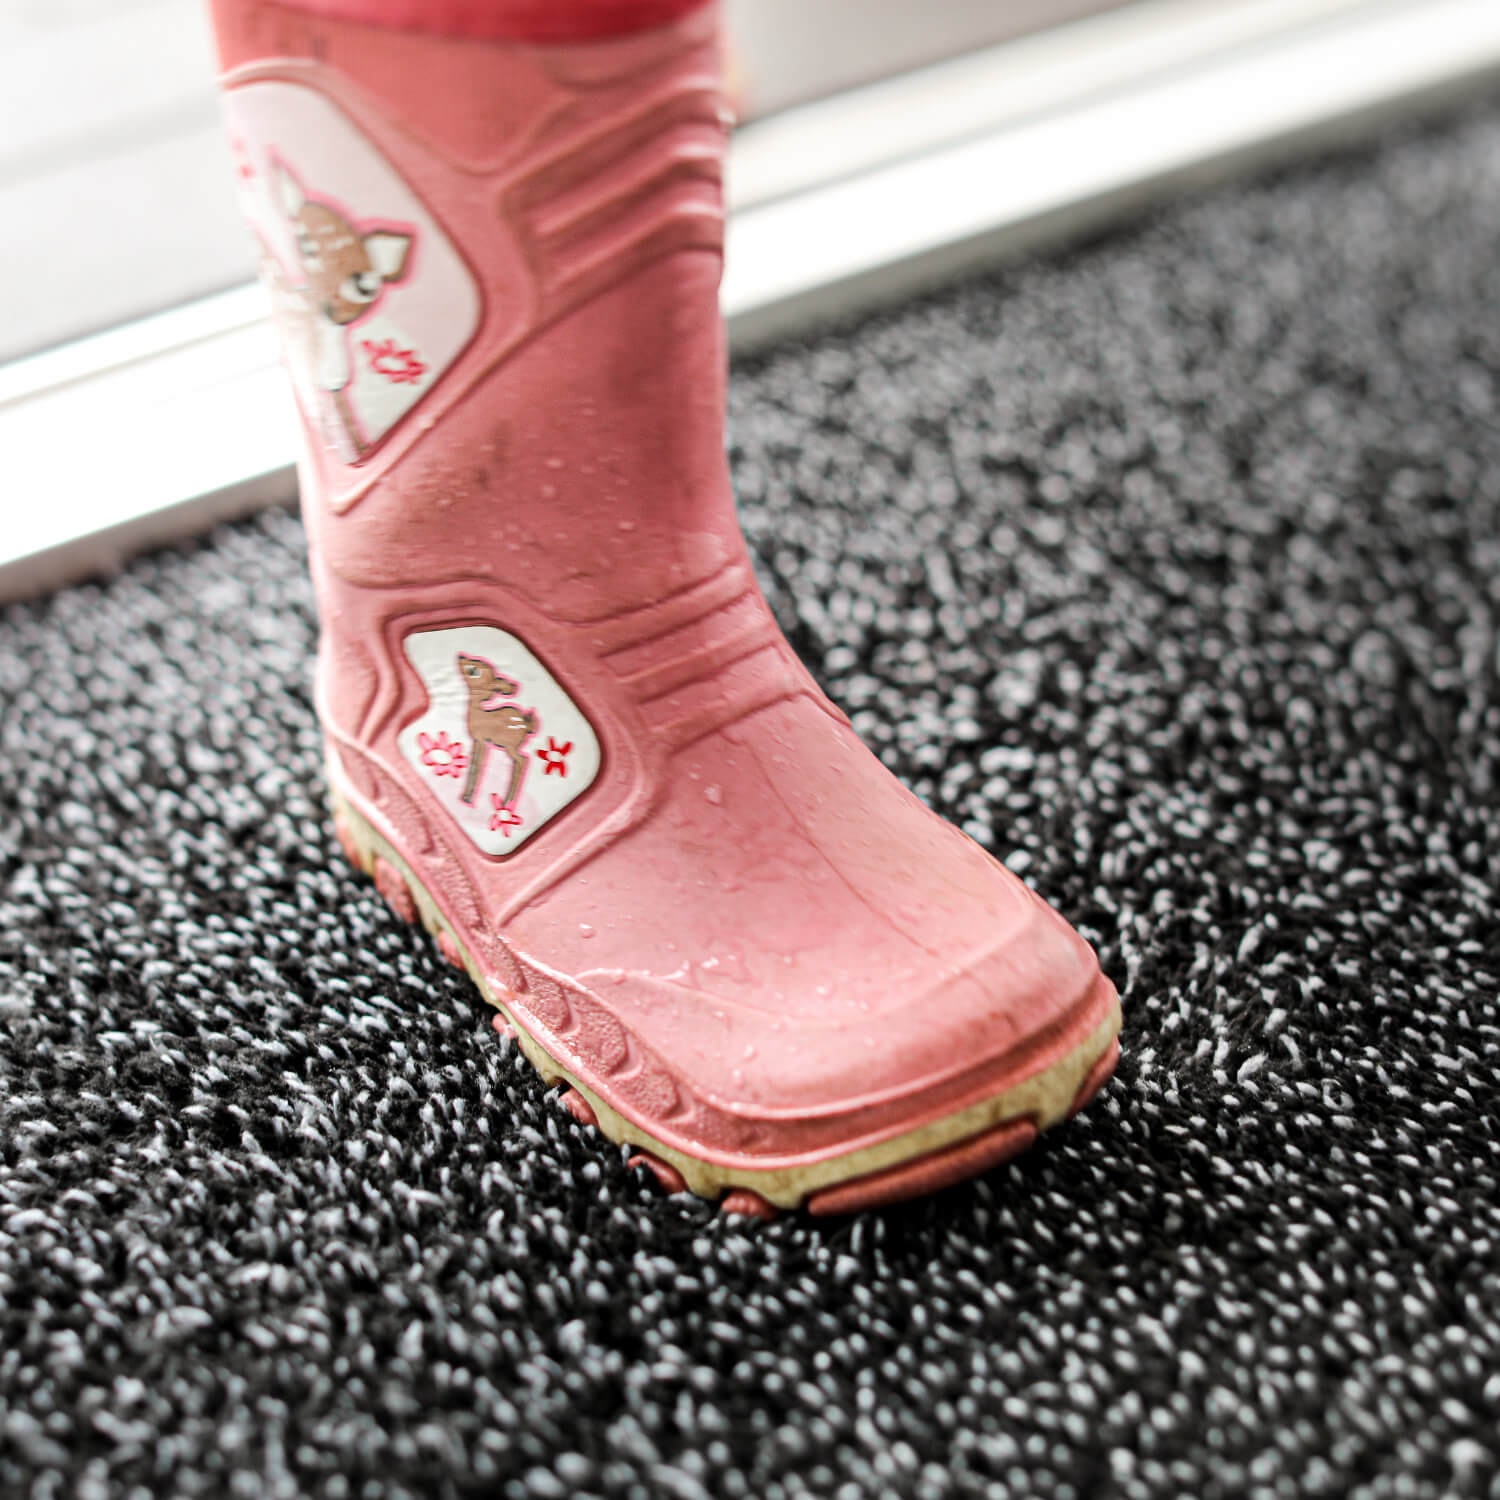 Fußmatte für Zuhause, reinigt auch sehr dreckige Schuhe - Profolio